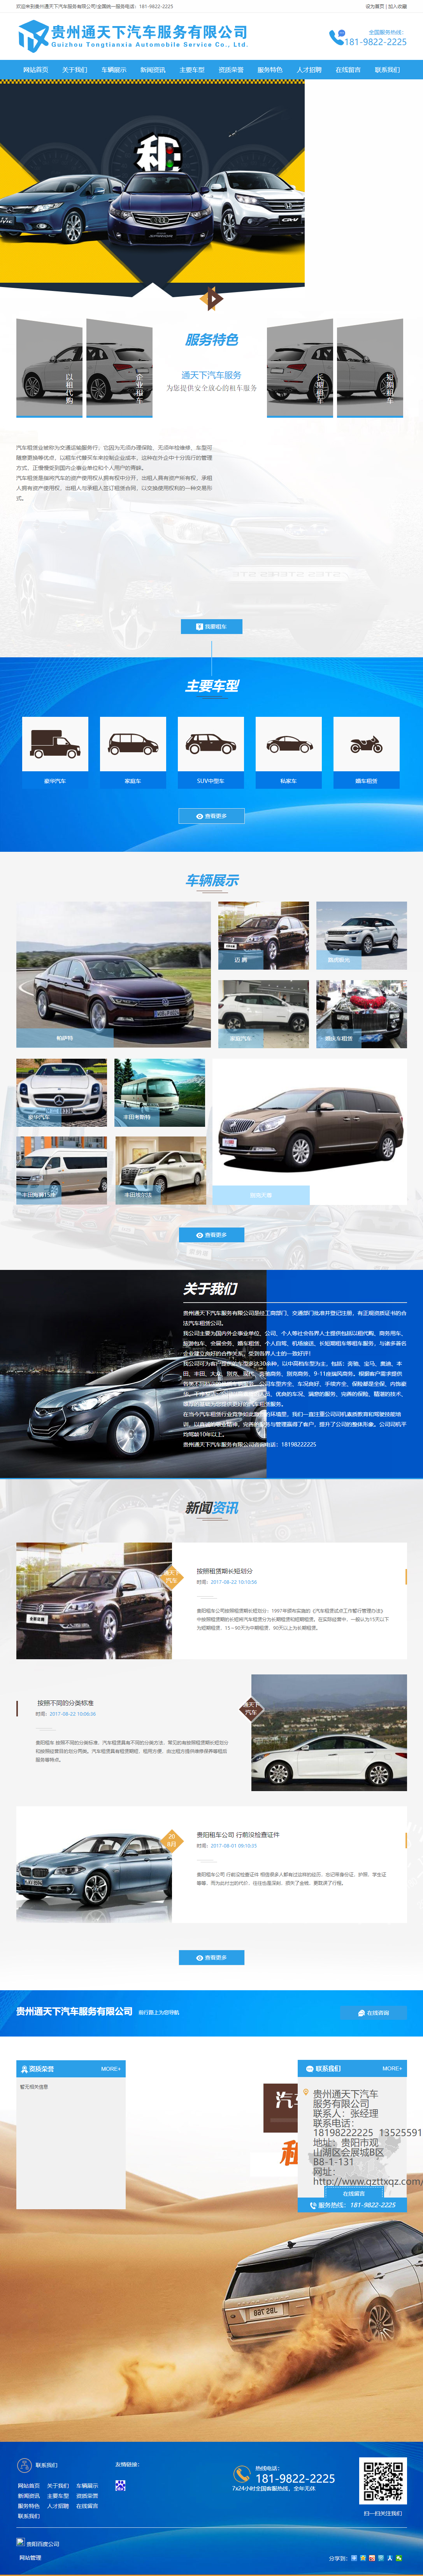 贵州通天下汽车服务有限公司网站案例